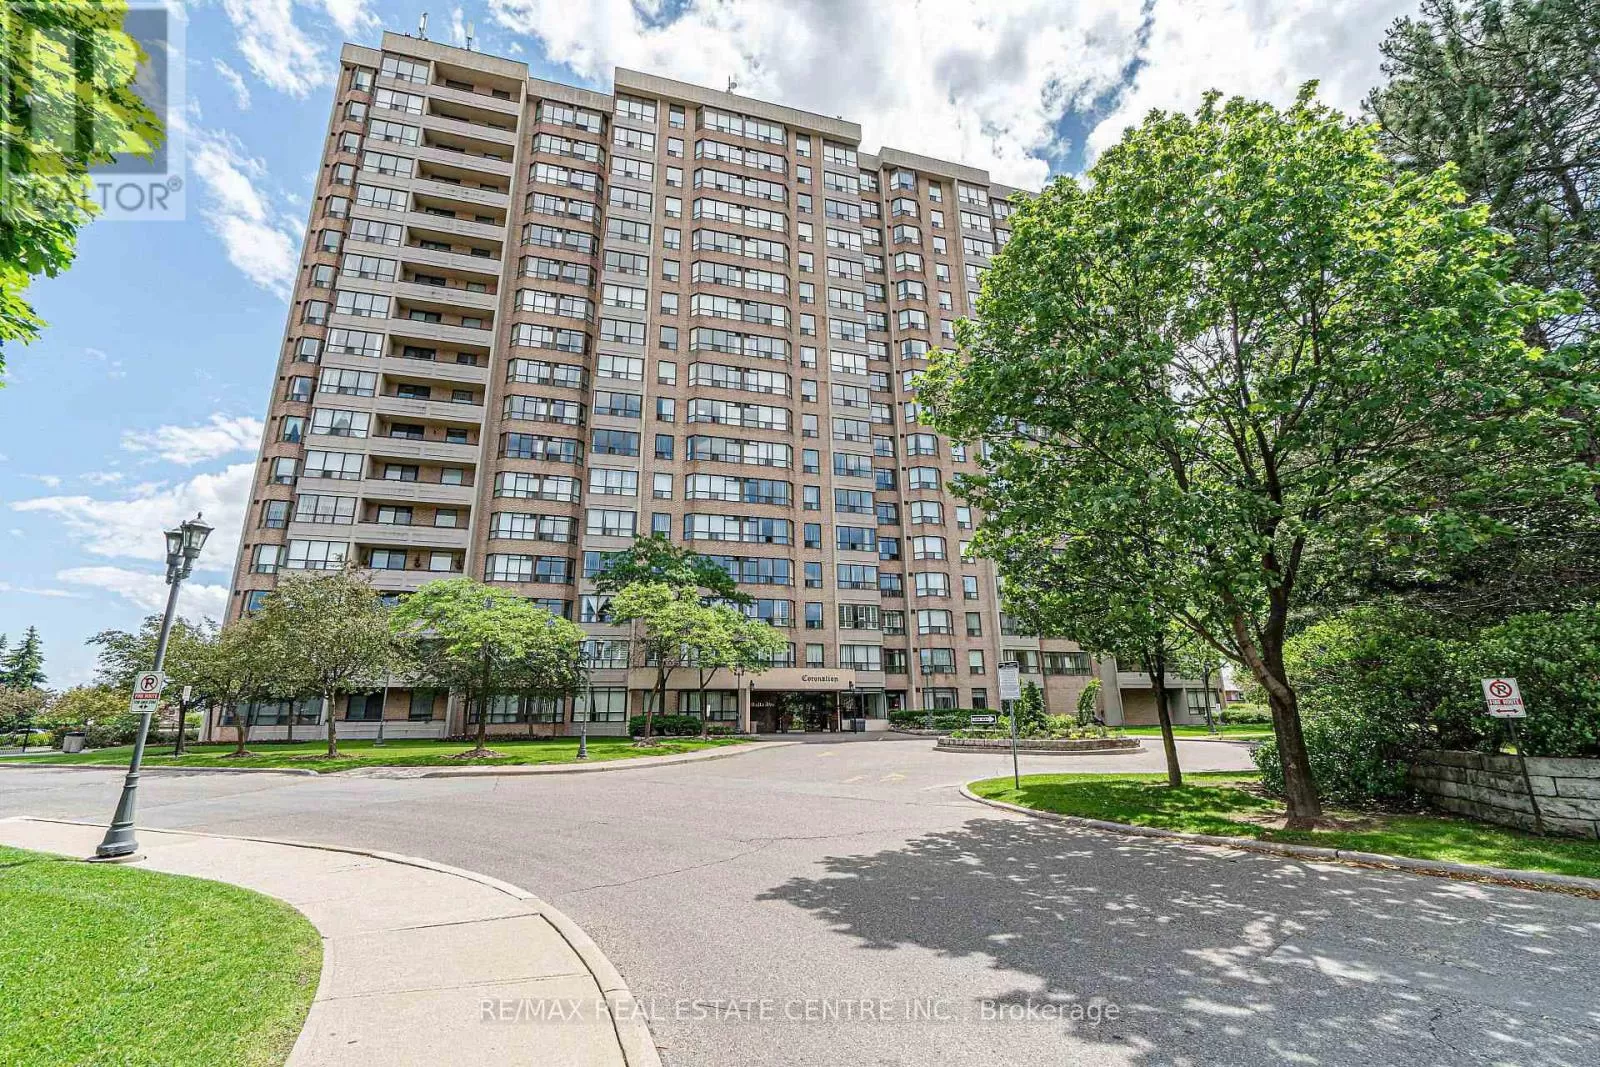 Apartment for rent: 210 - 10 Malta Avenue, Brampton, Ontario L6Y 4G6